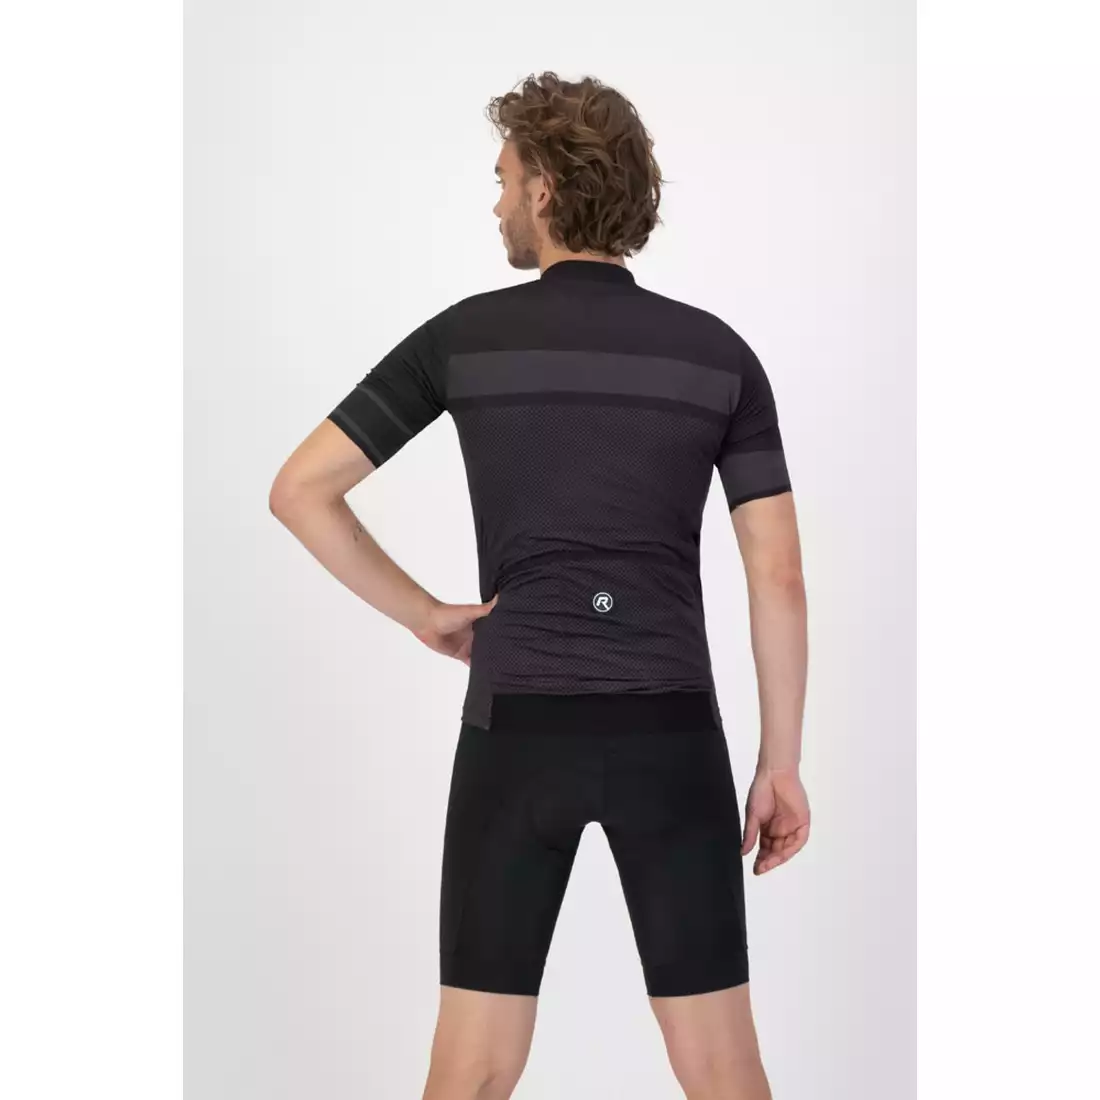 Rogelli BLOCK tricou de ciclism masculin, negru